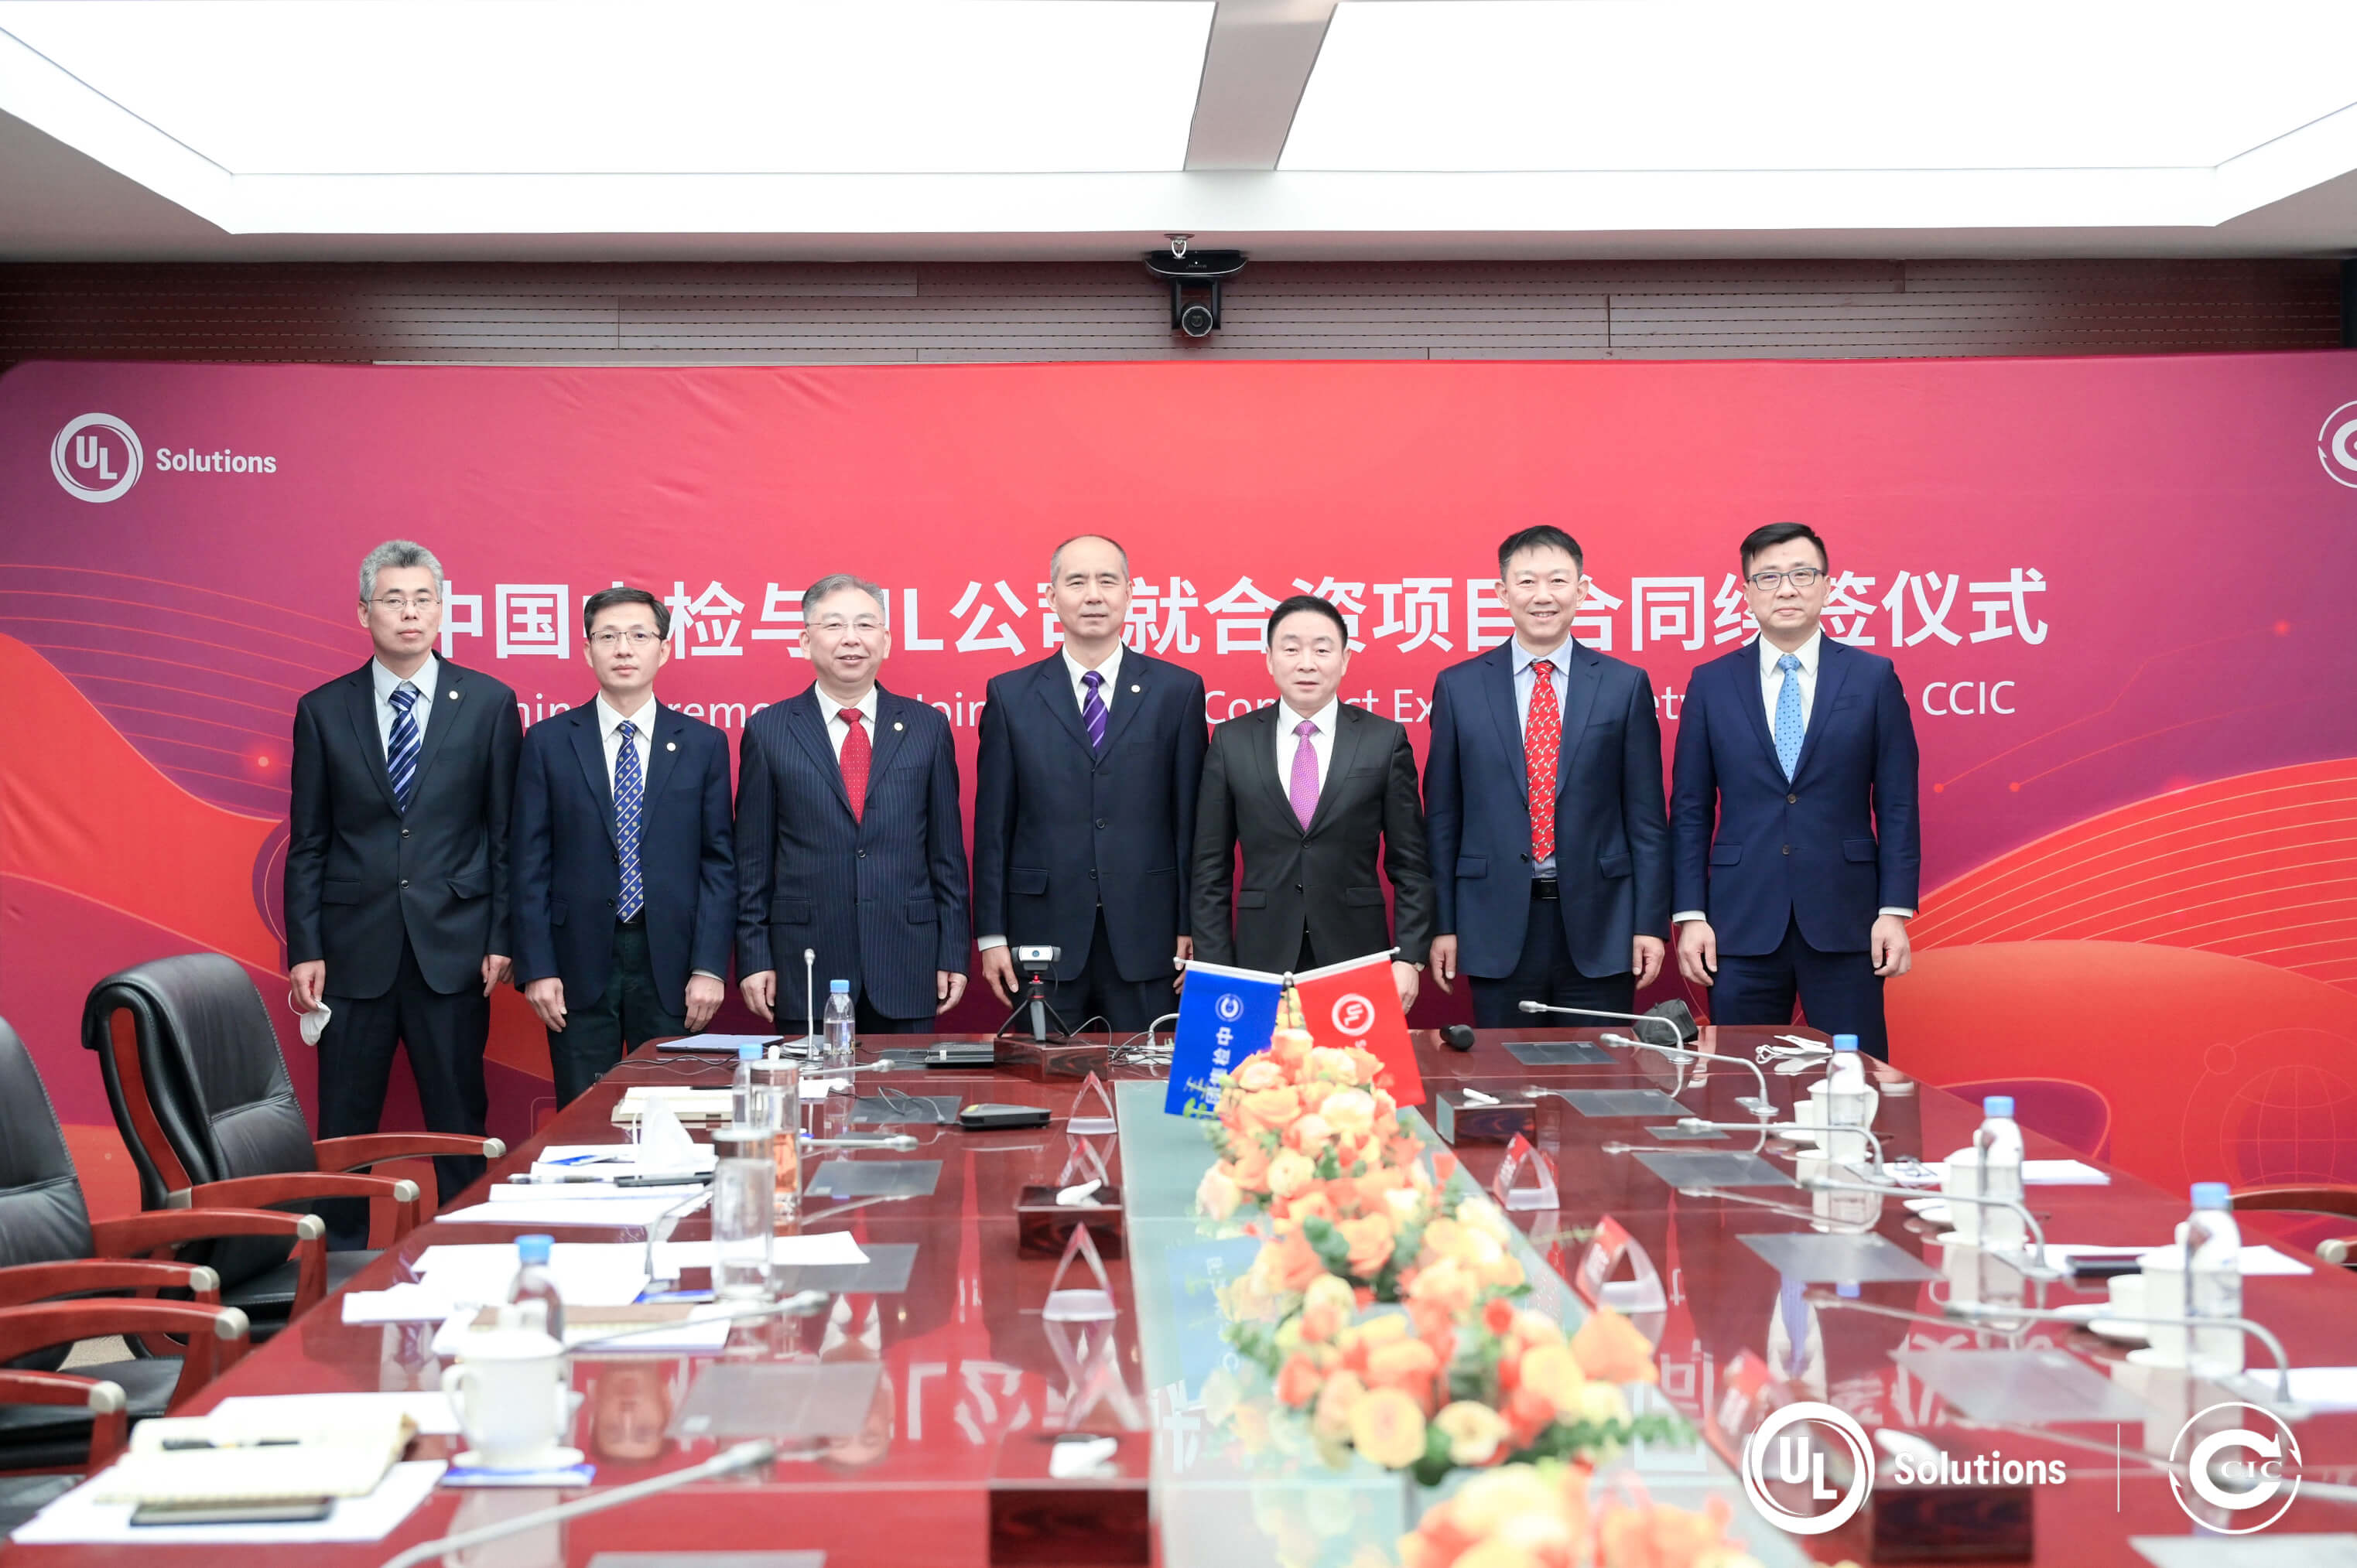 UL公司与中国中检续签合资项目合同